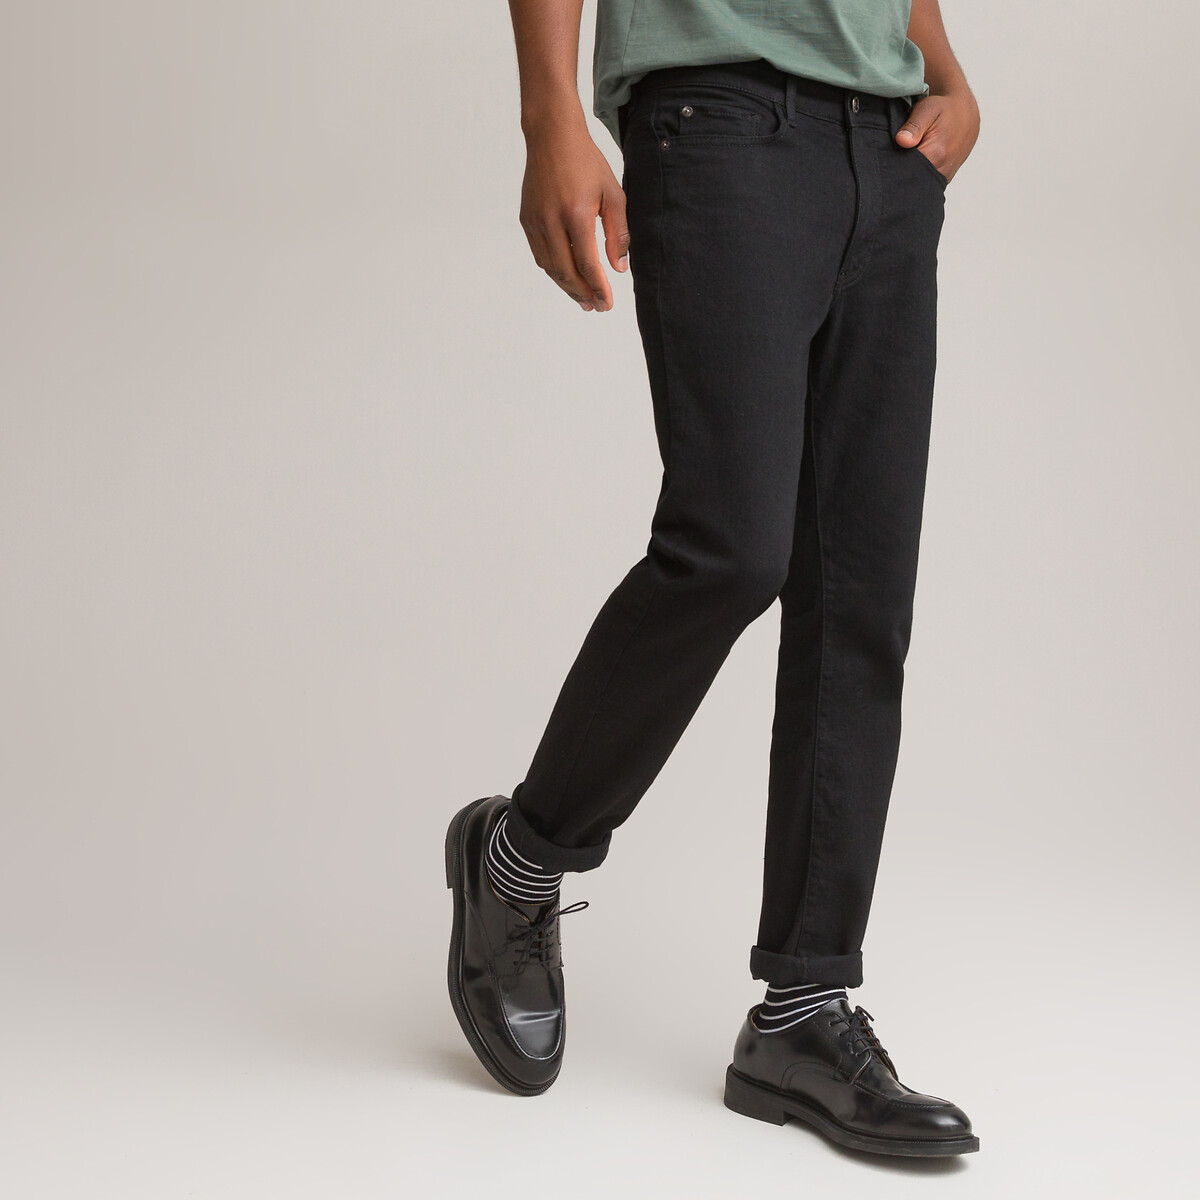 La Redoute Homme Vêtements Pantalons & Jeans Jeans Slim Jean slim stretch Scanton 